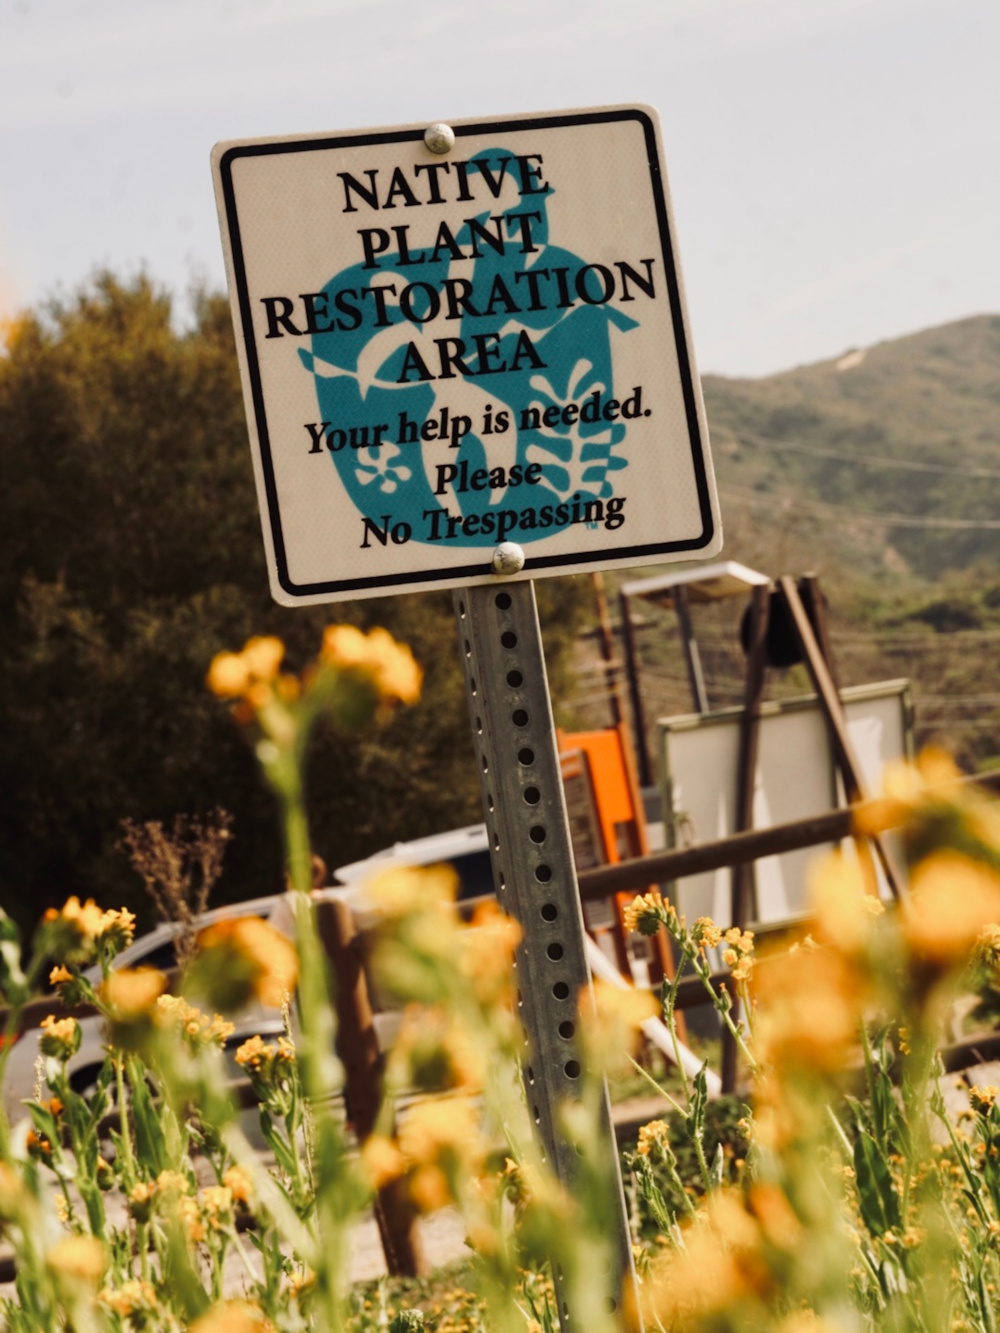 uma placa que diz área de restauração da planta natty